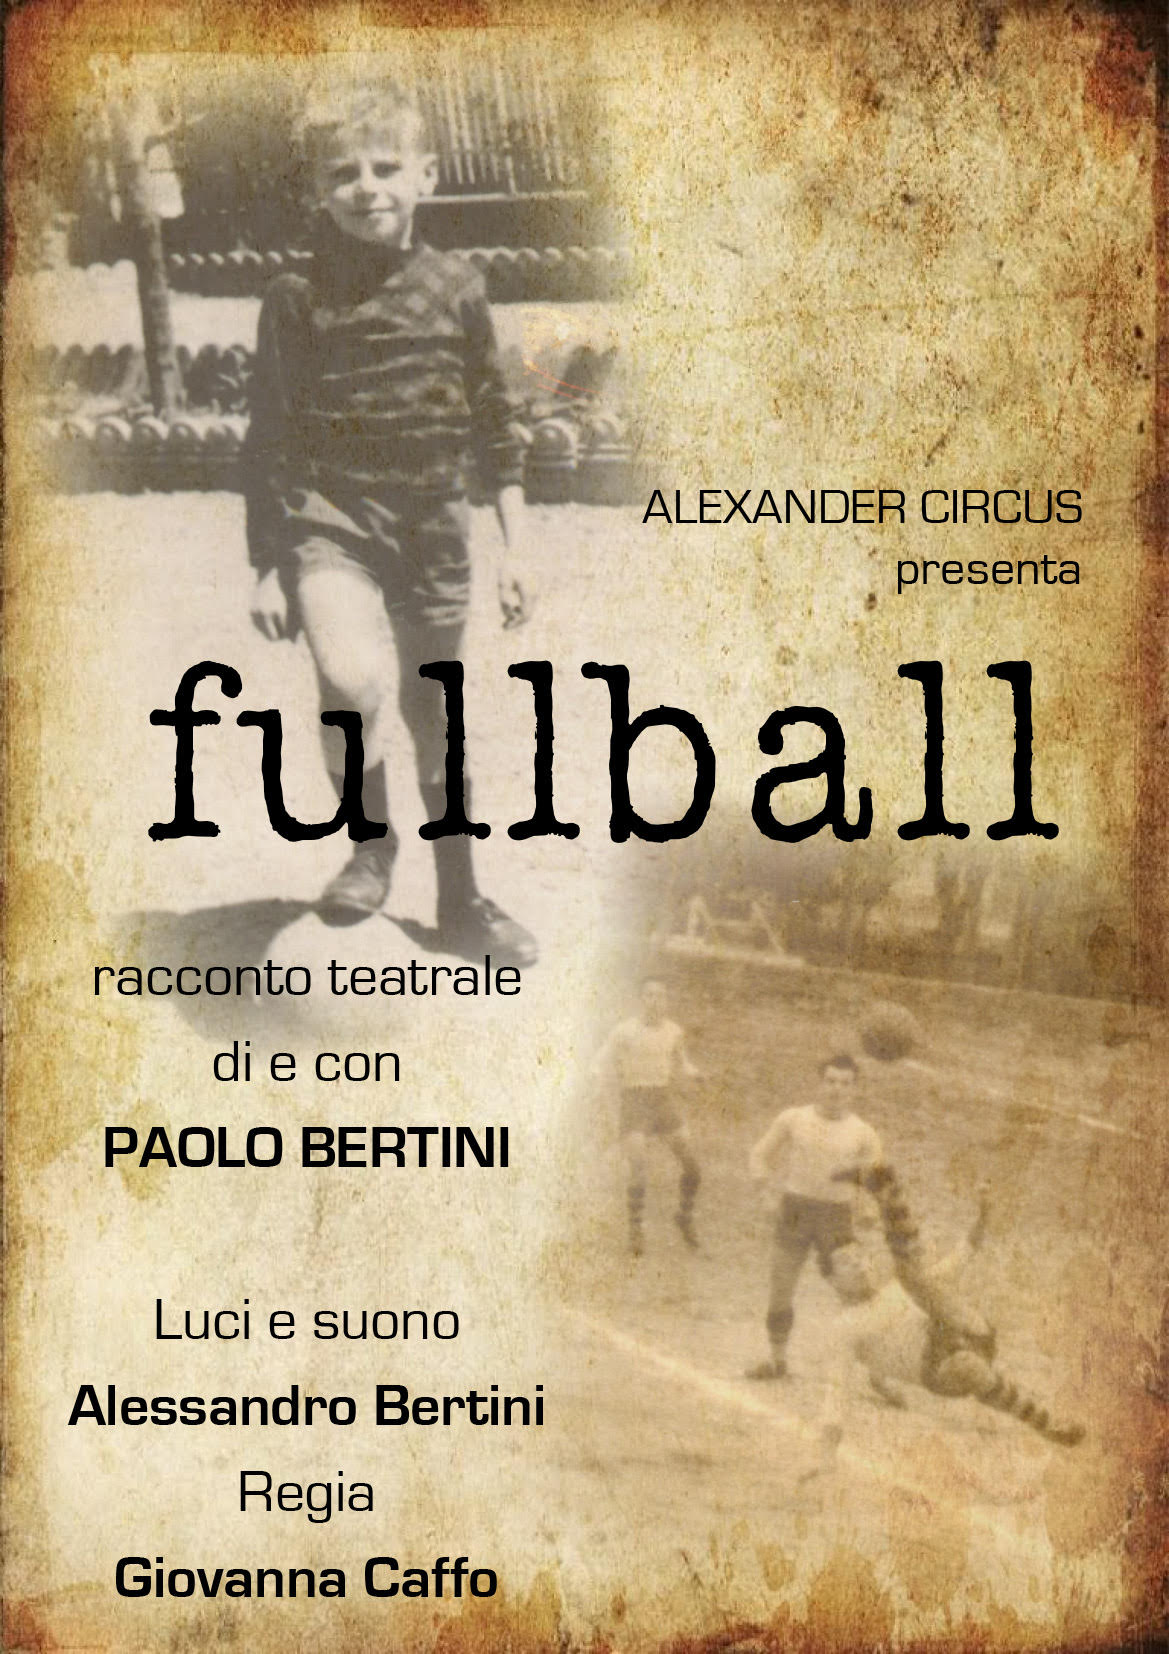 Fullball